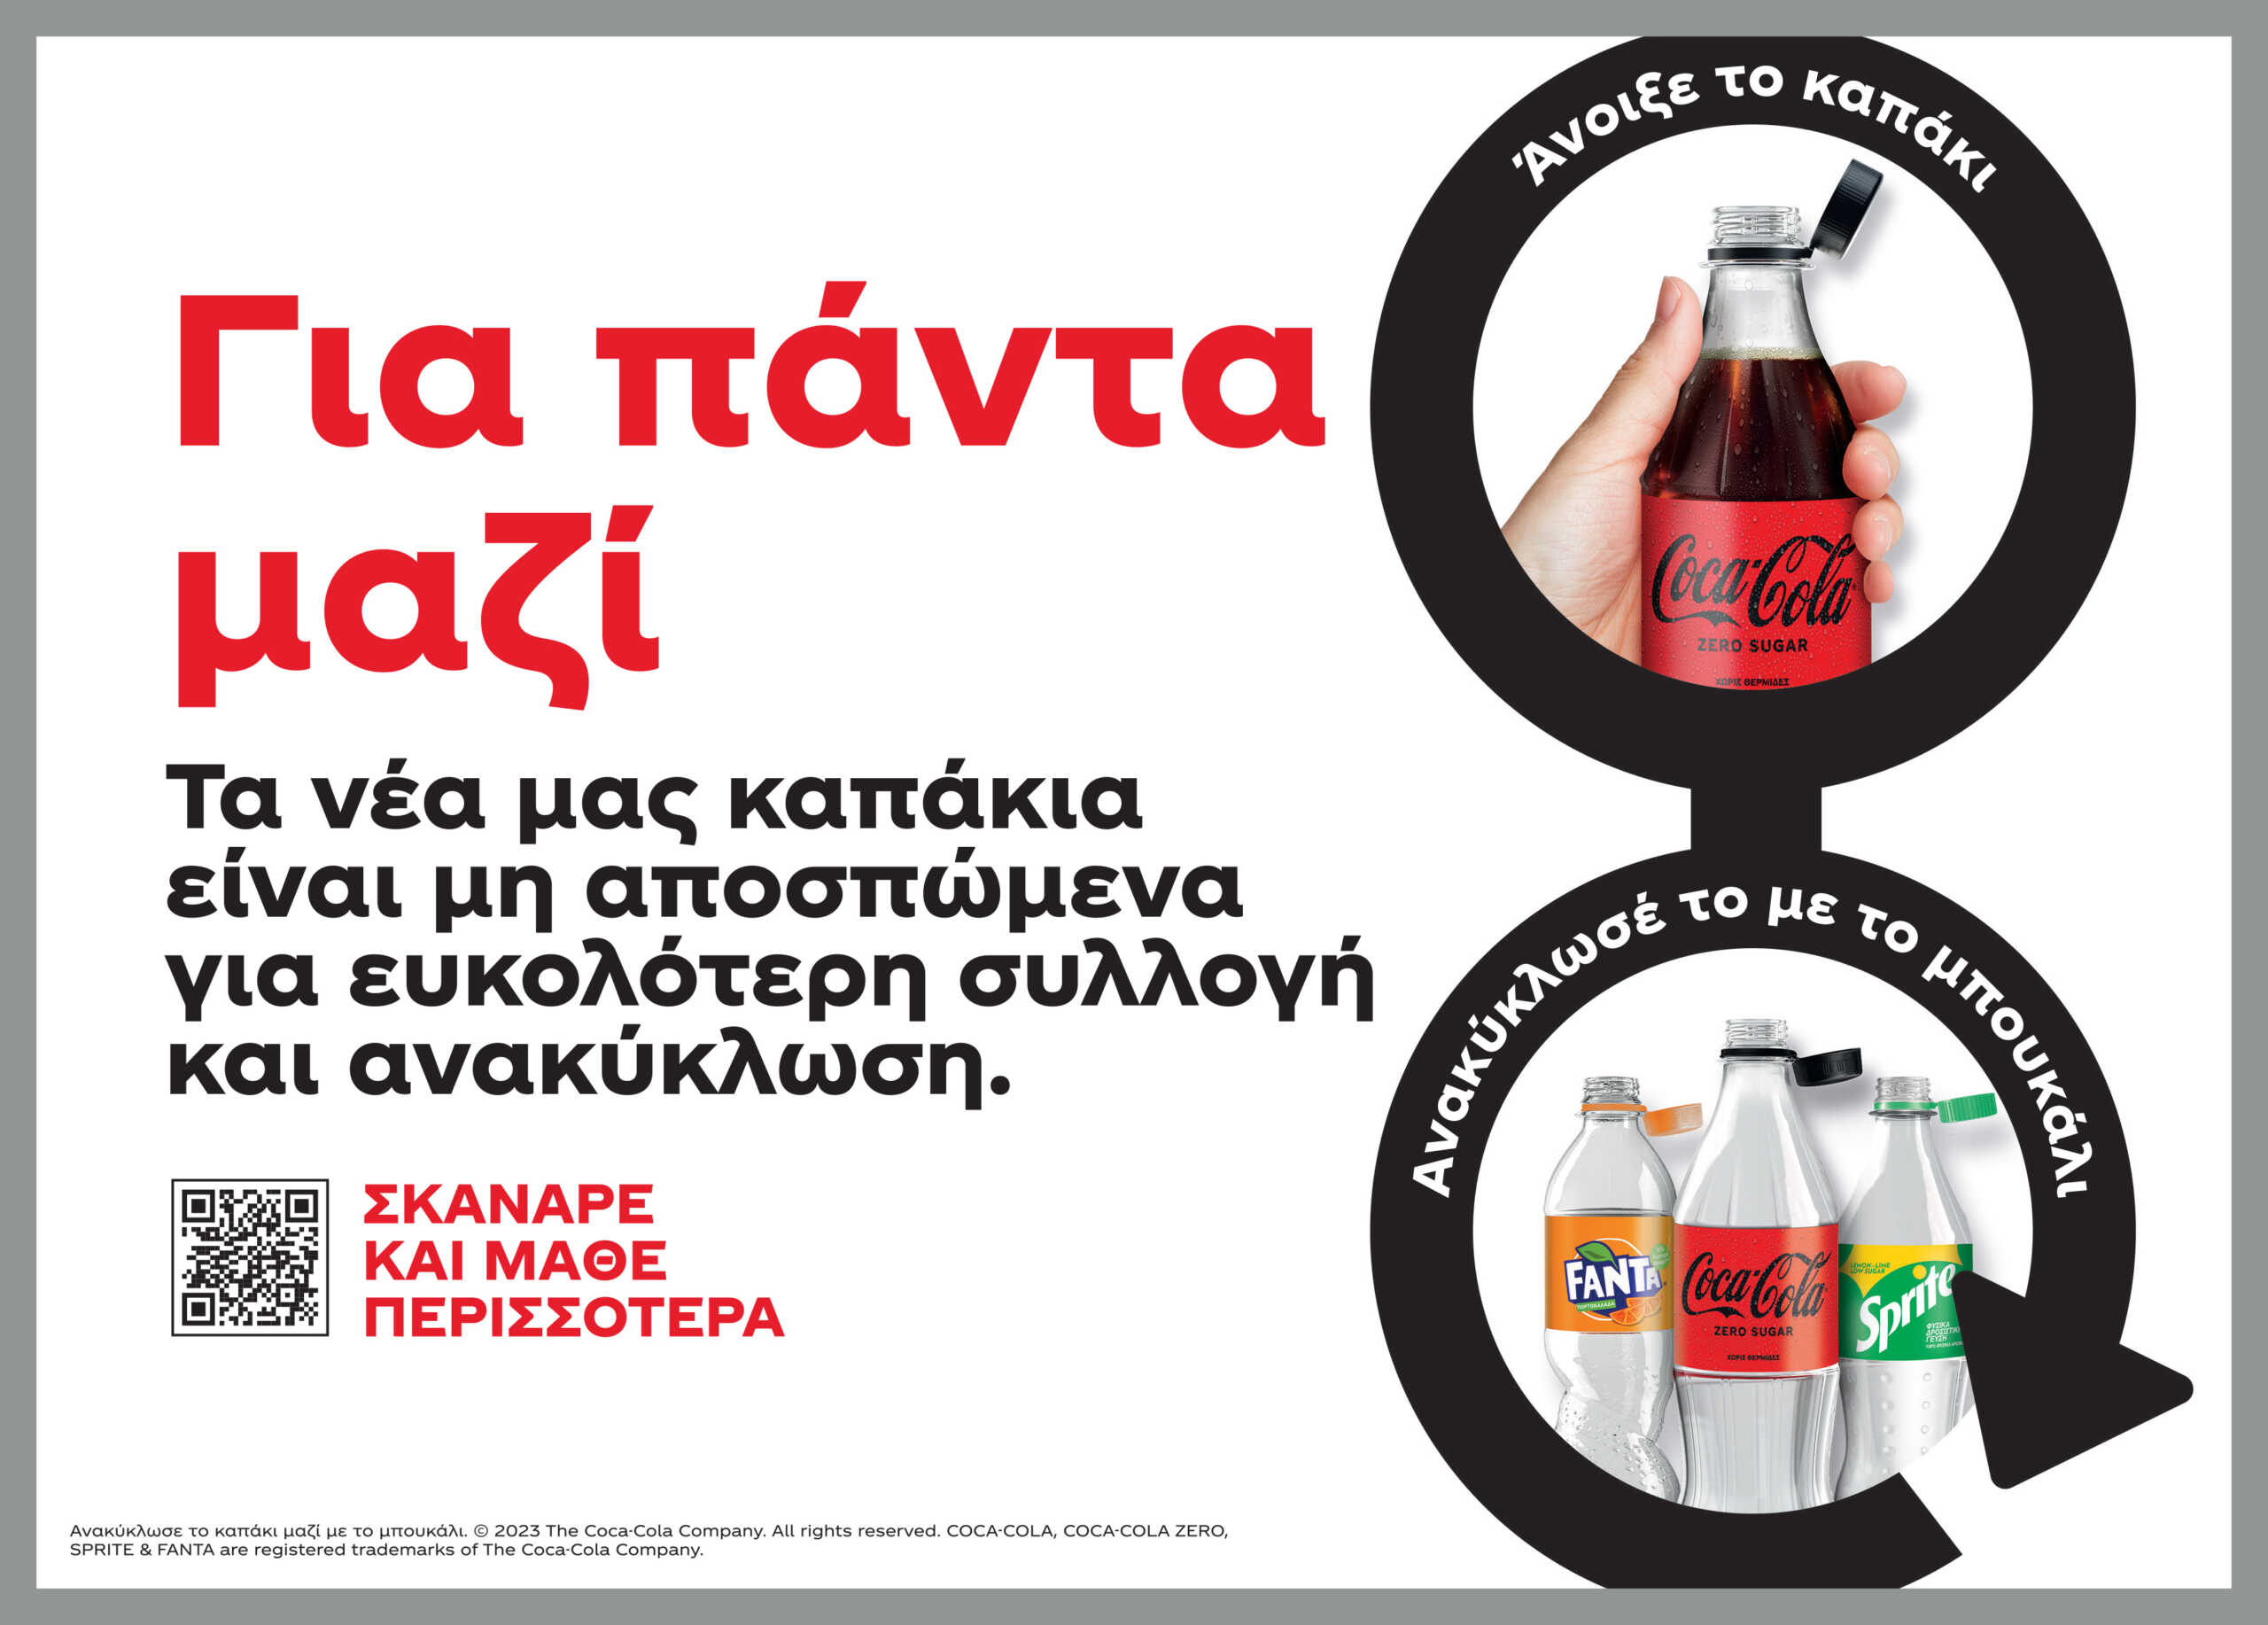 Μη αποσπώμενα καπάκια: Ένα νέο βήμα από την Coca-Cola στην Ελλάδα με στόχο ένα πιο βιώσιμο μέλλον